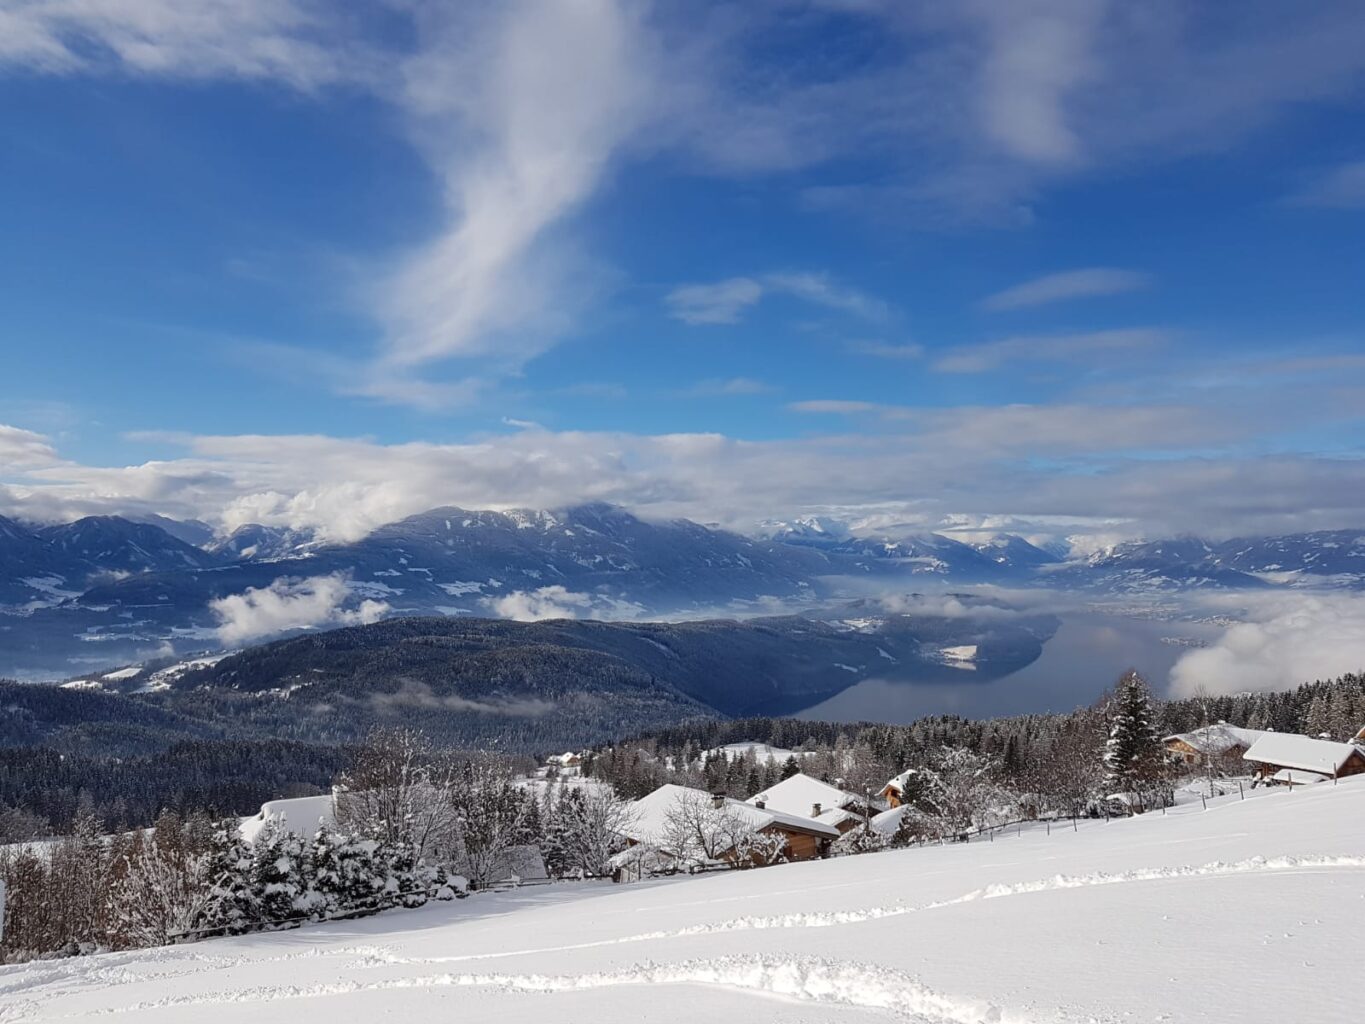 Winterurlaub in der Ferienwohnung der Mirnock Hütte in Kärnten.